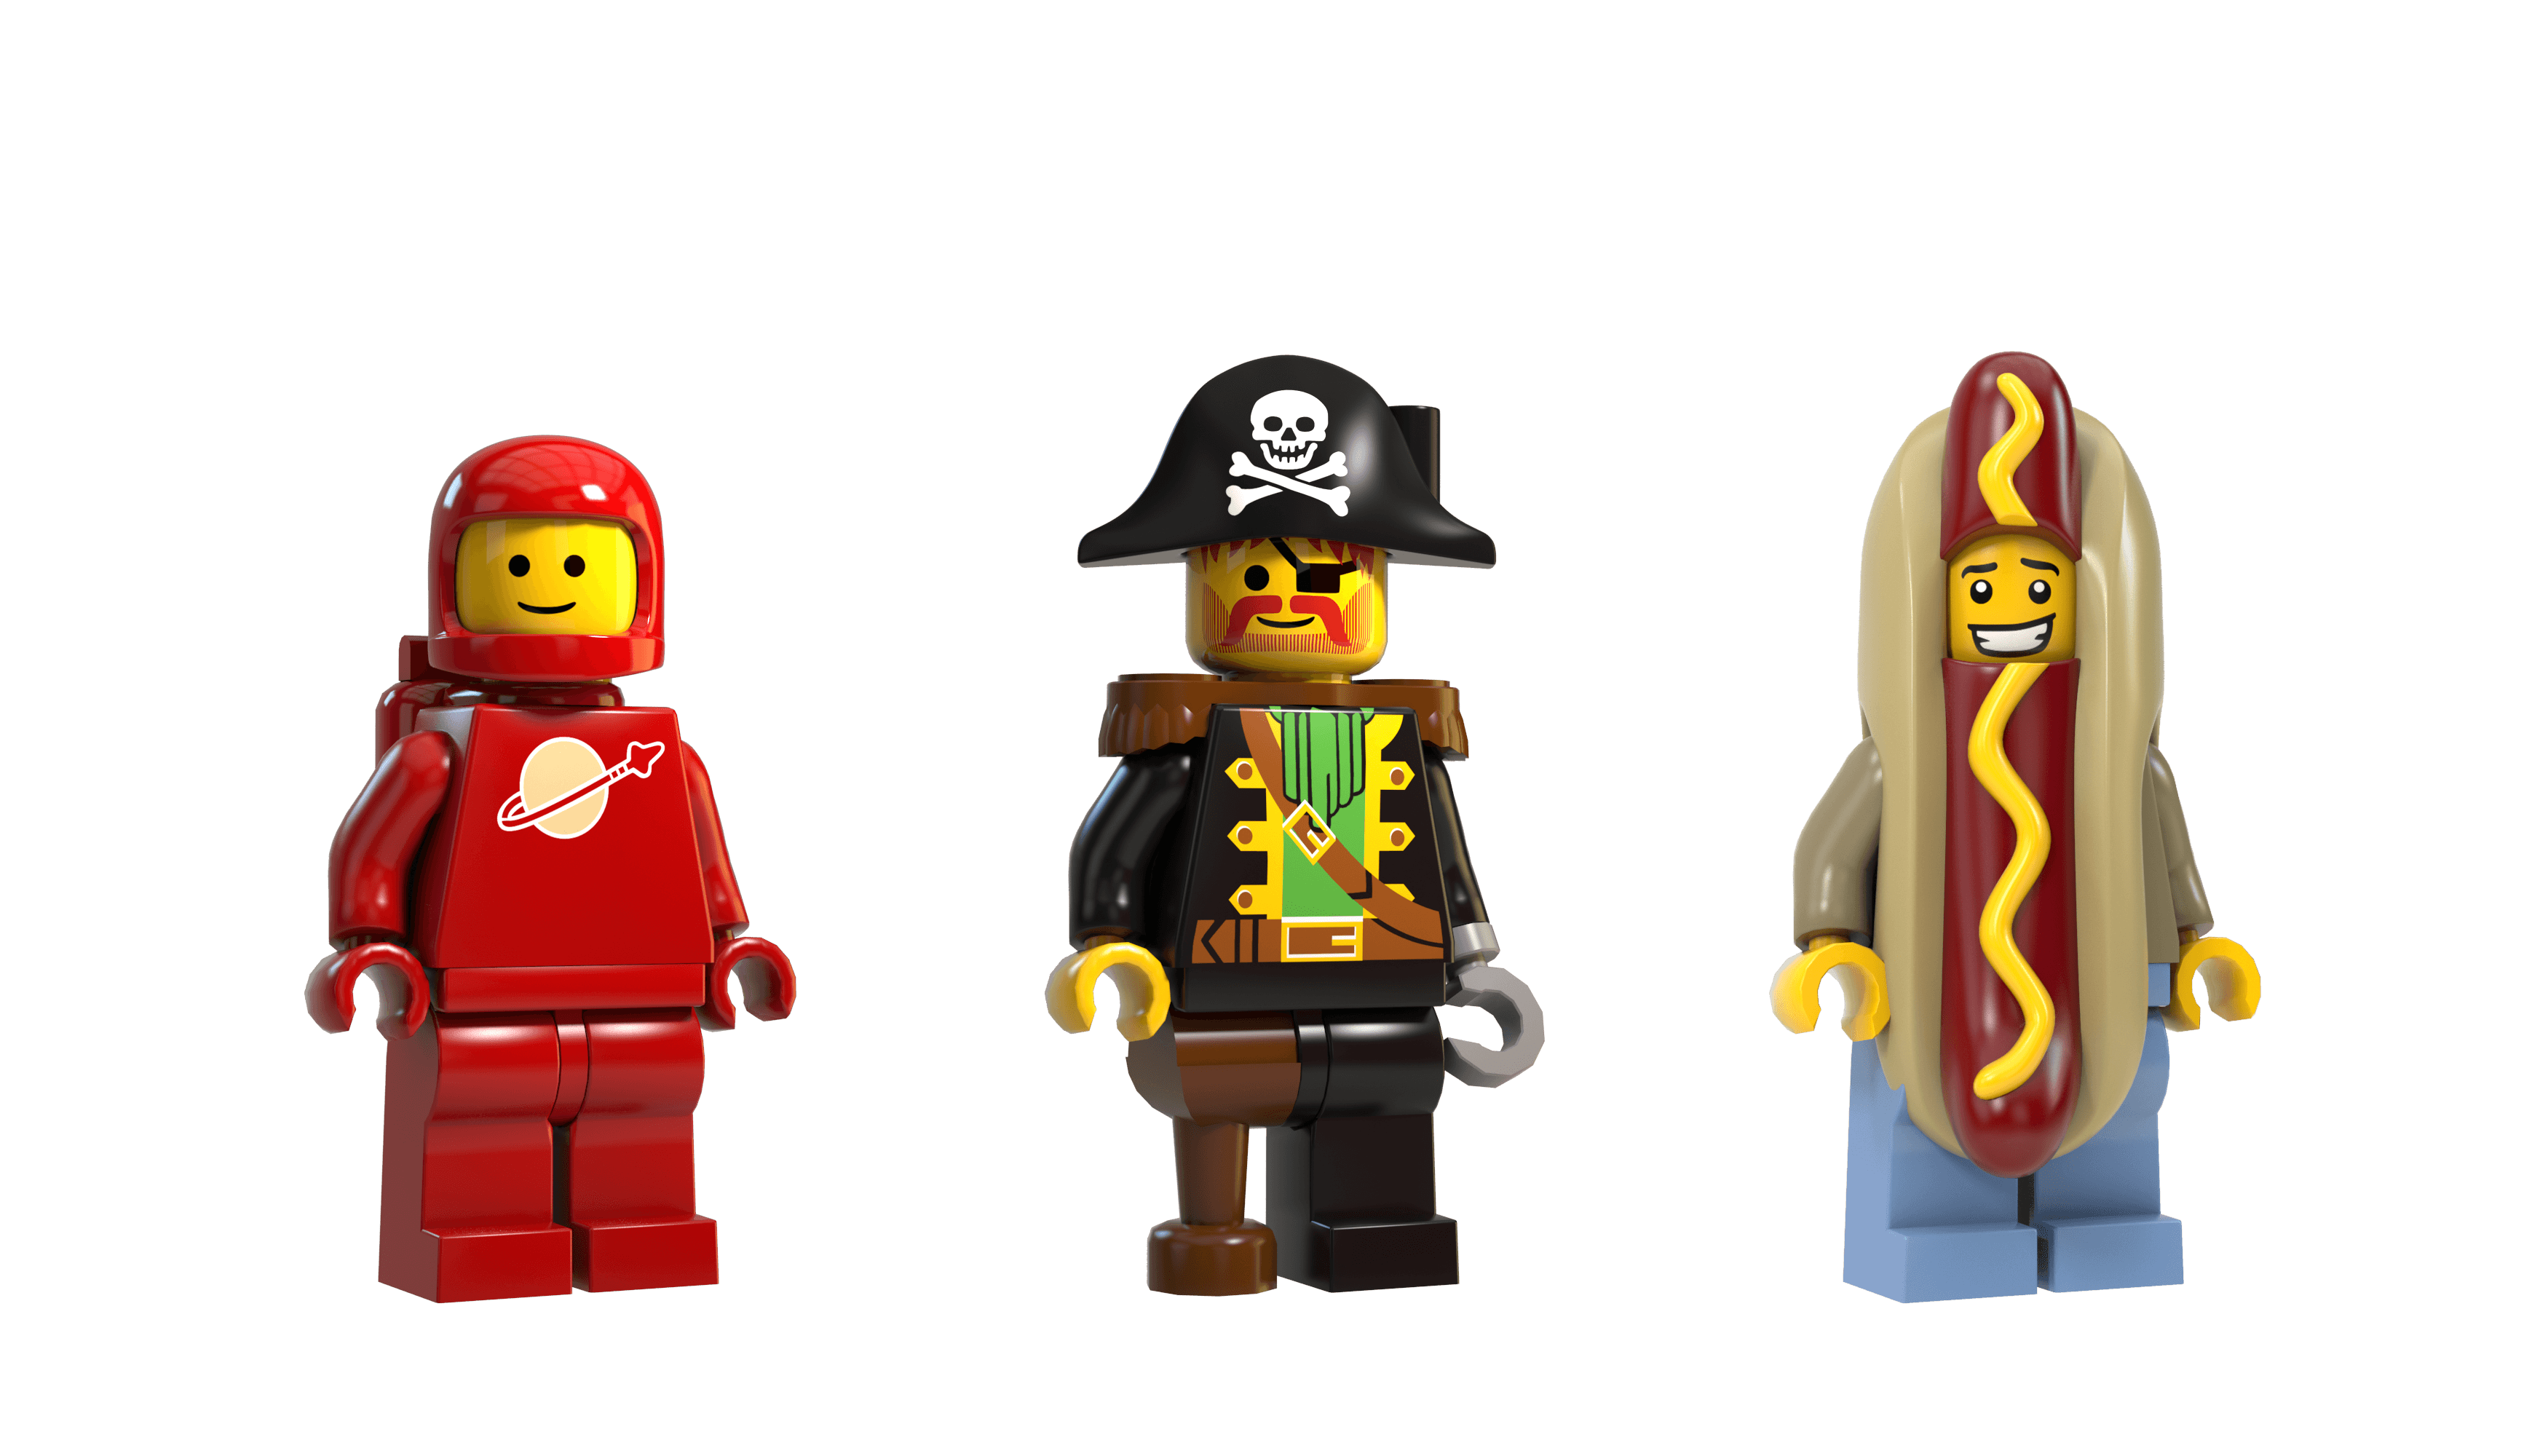 Kolaborasi Gameloft dan LEGO Group akan Mendatangkan Permainan Lego ke Platform Mobile